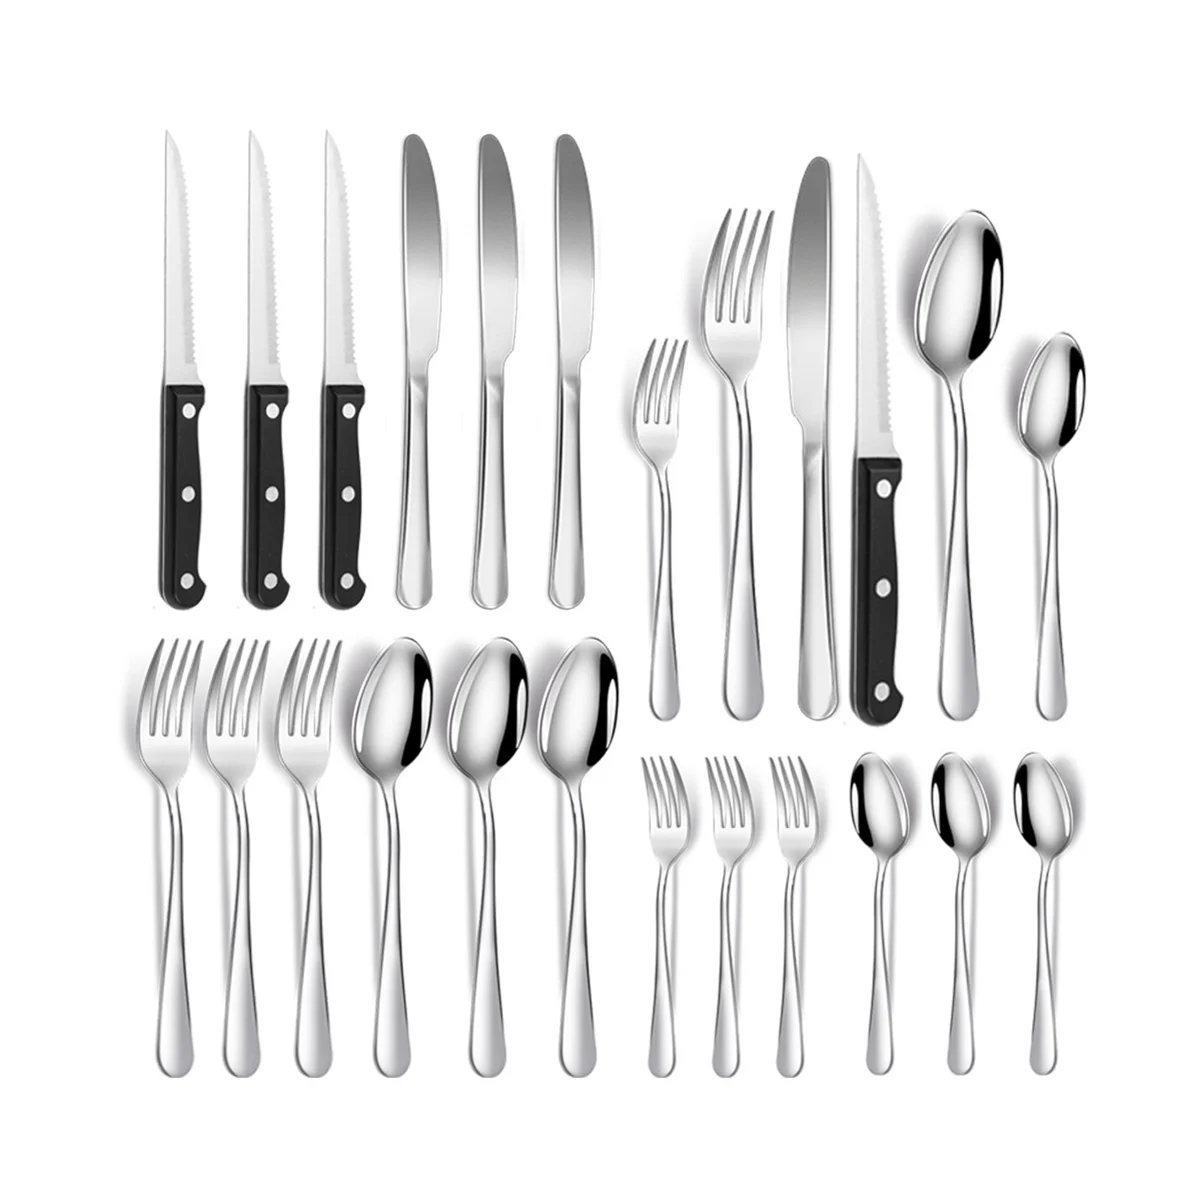 

Набор столовых приборов из нержавеющей стали, кухонная утварь с пятнистой отделкой, набор посуды, ложки, вилки, ножи для дома, отеля